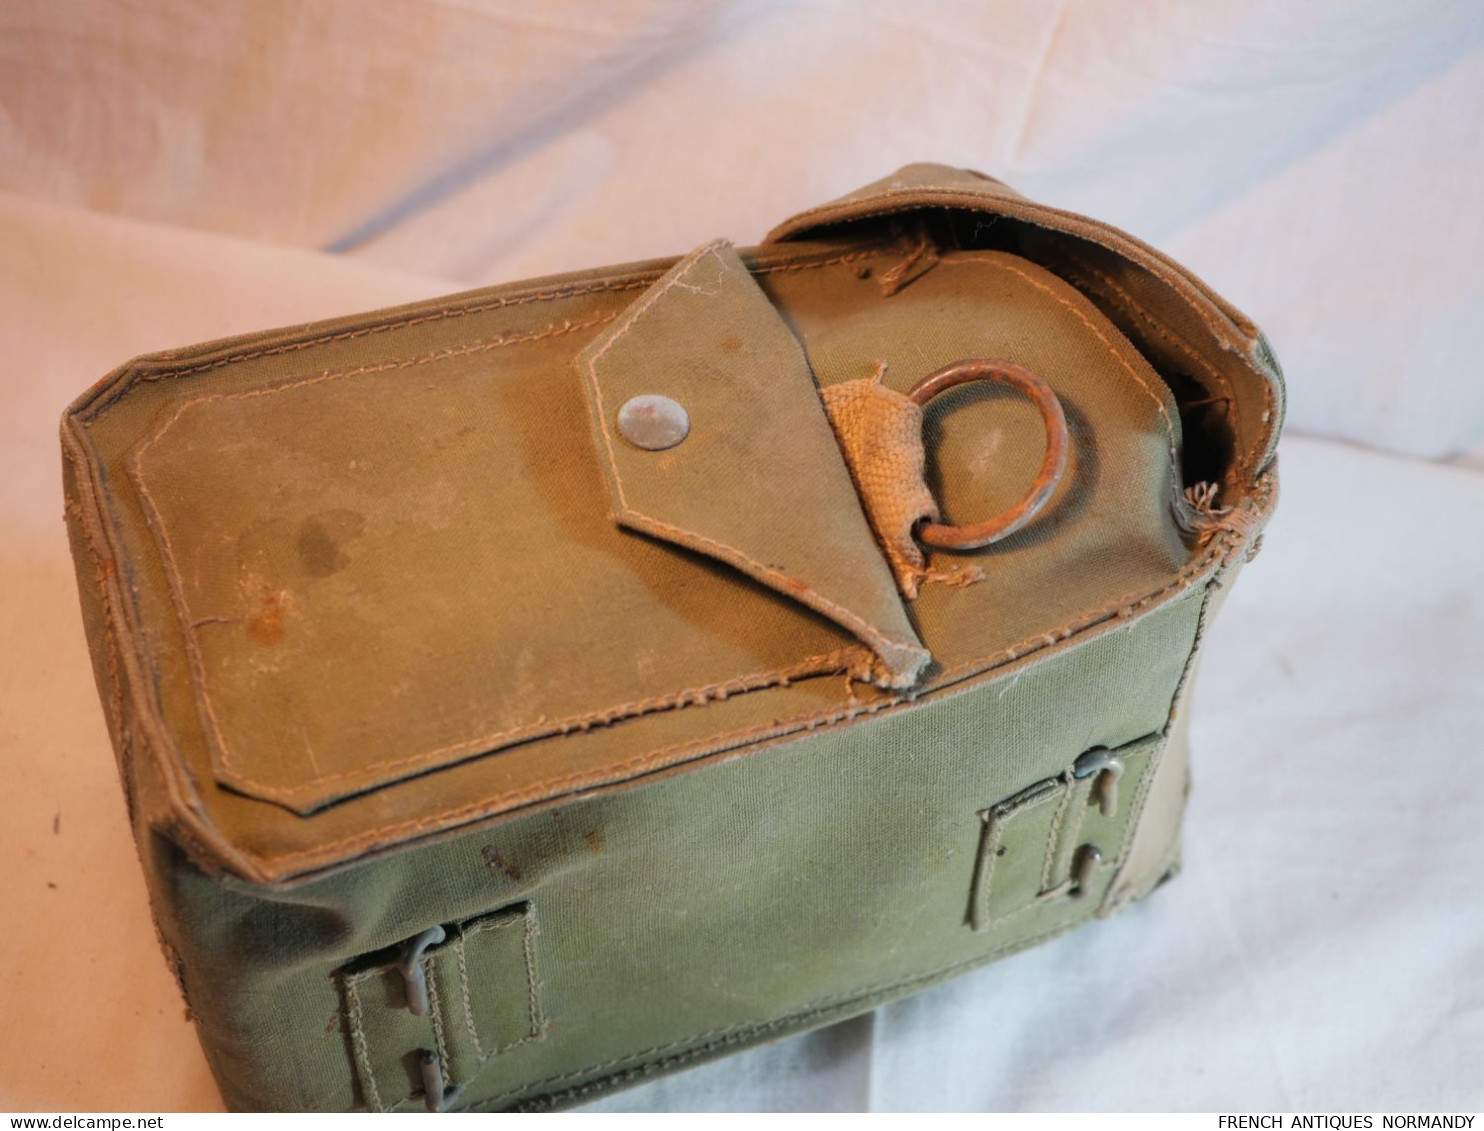 W/|\ D - sacoche britannique avec un éclat dans la pochette et une boite de vaseline britannique Normandie 1944 WWII